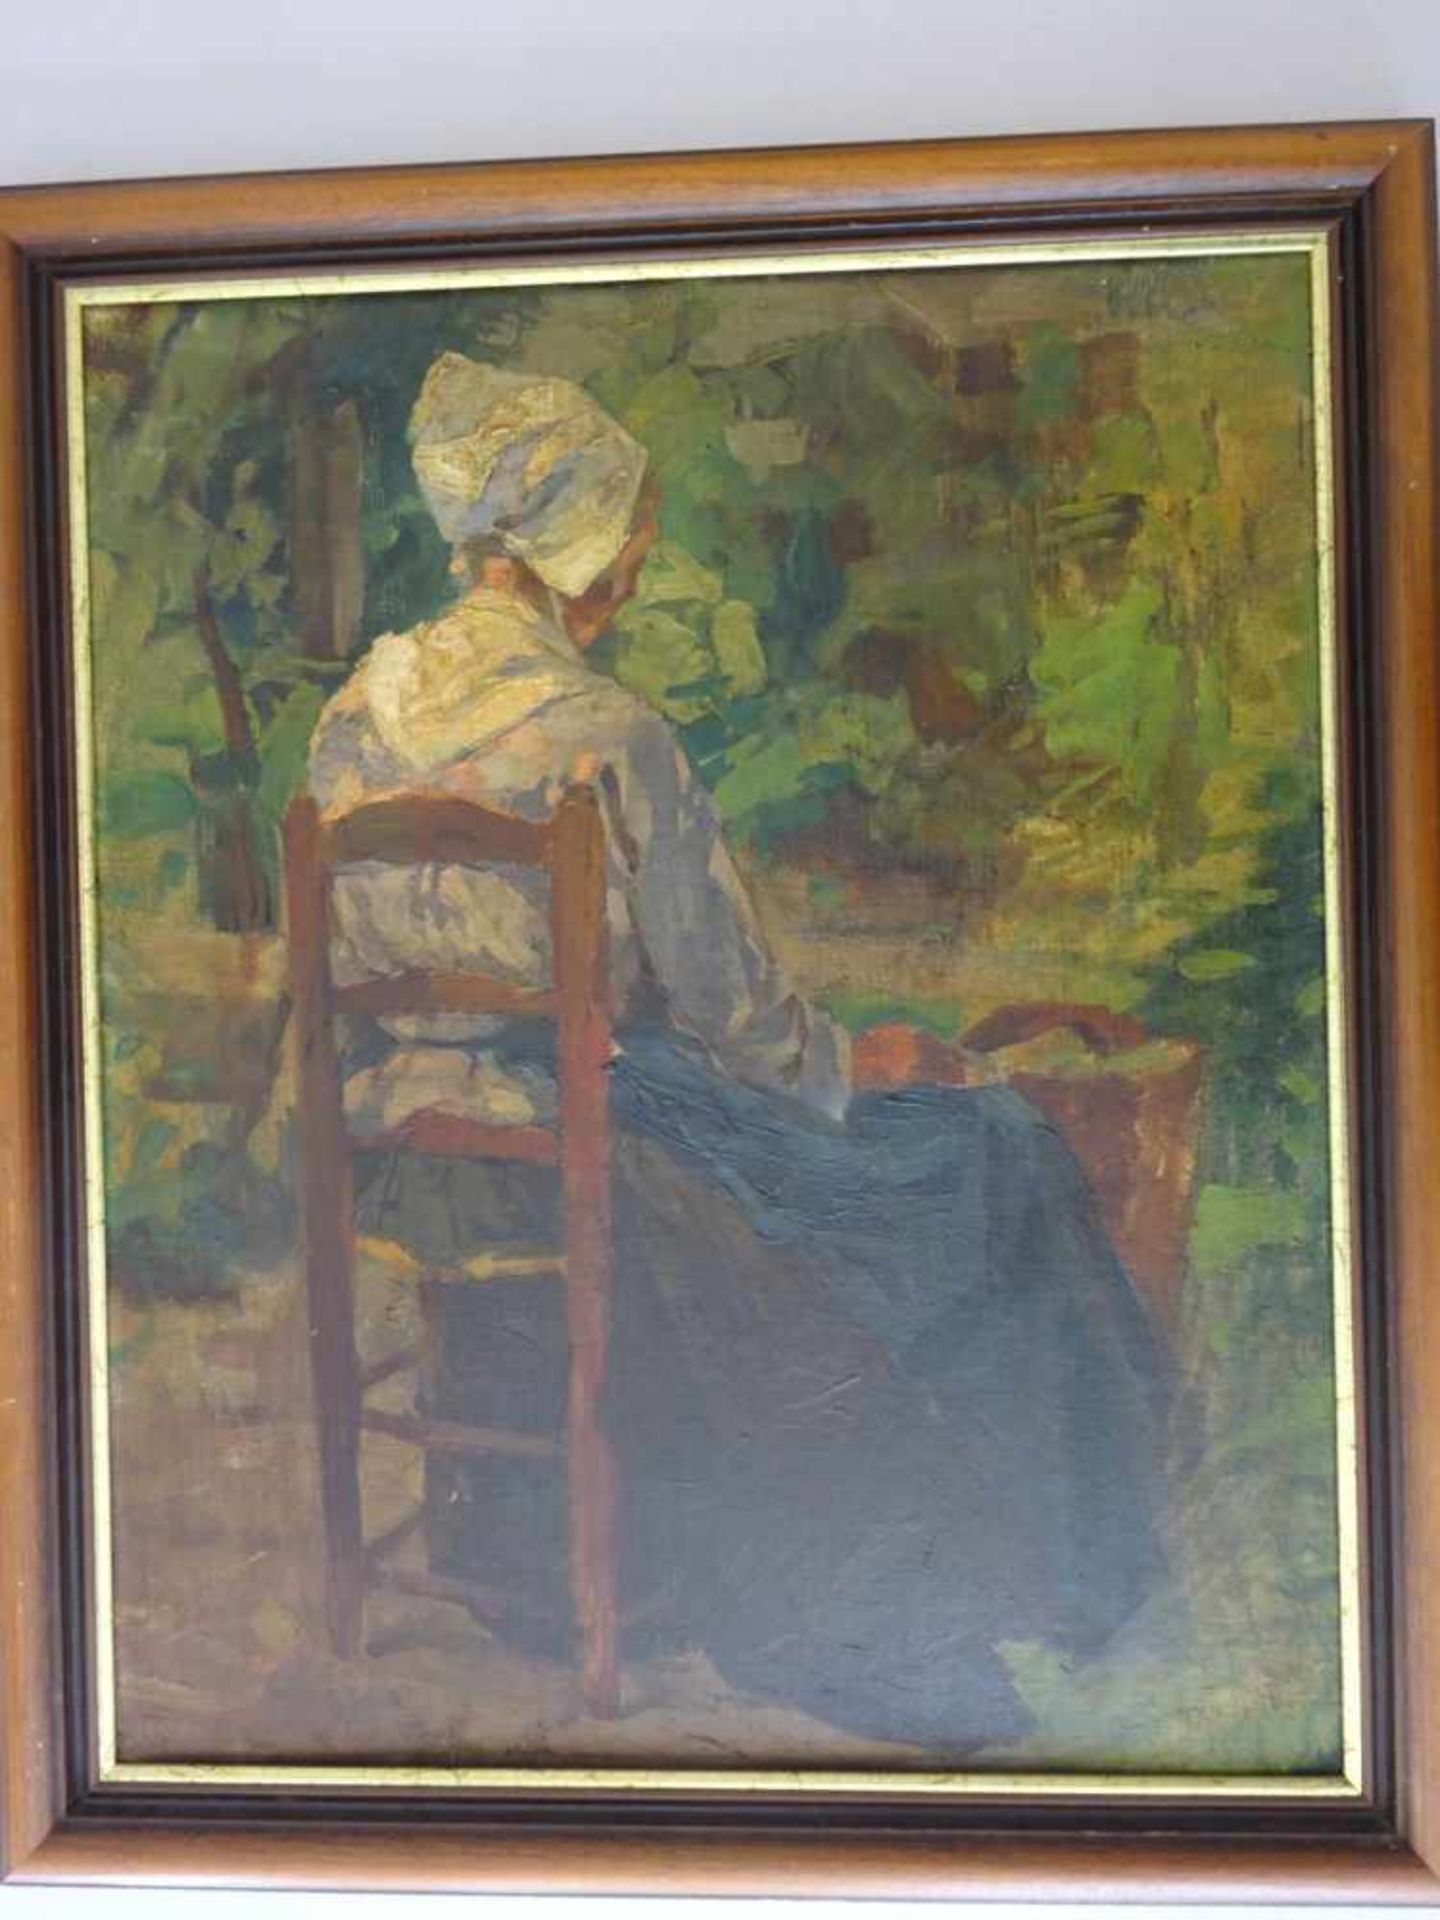 Tiedjen, Willy (?)(Hamburg 1881 - 1950 München). Sitzende Frau mit Haube. Öl auf Hartfaser. (Um